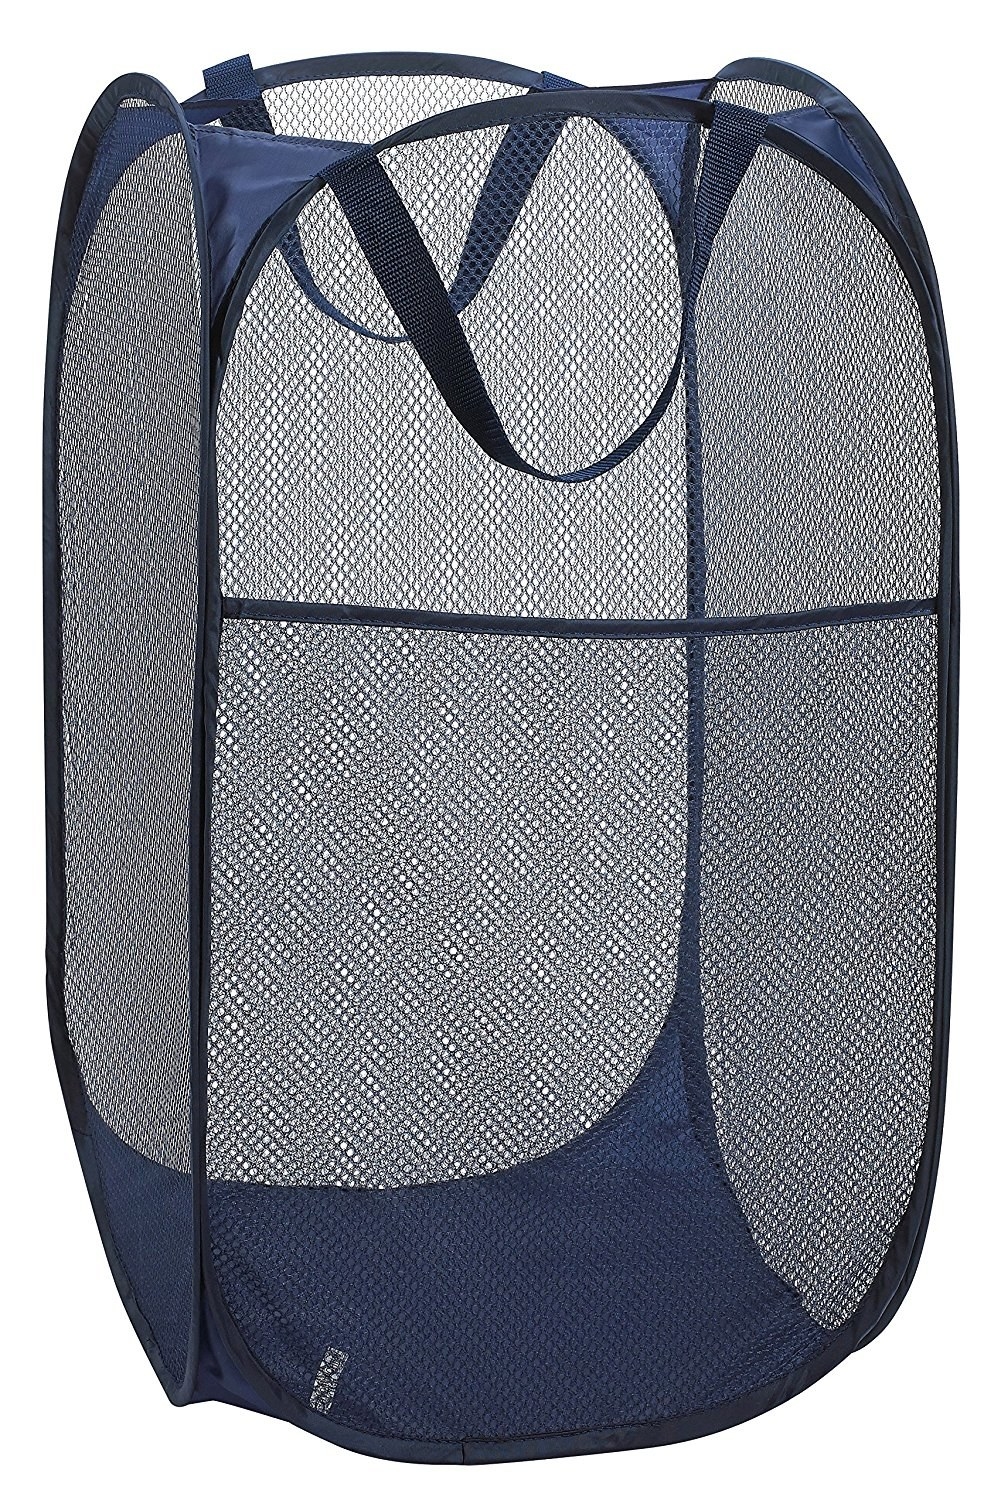 FunkyBuys BLACK 3 Compartment Lights & Darks Laundry Bag Bin Hamper Basket 100% Polyester Storage Washing Bag 